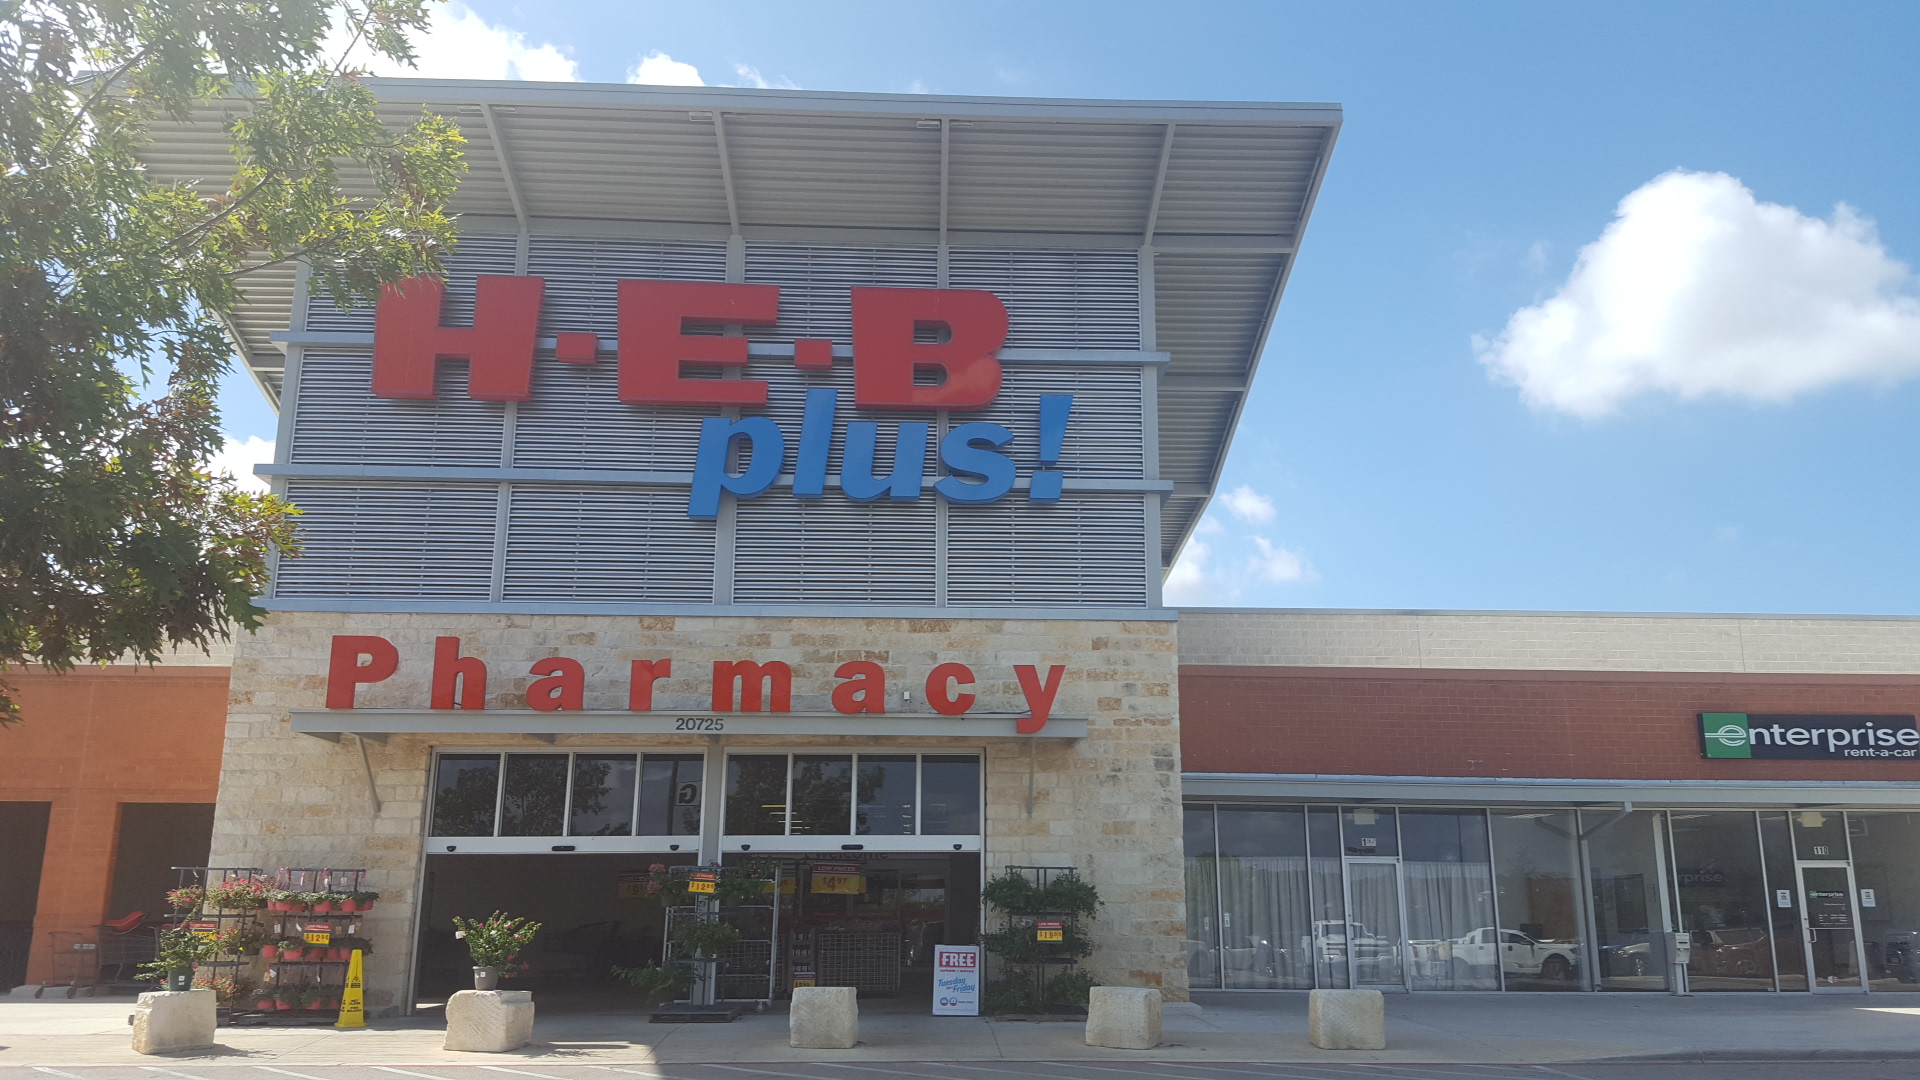 H-E-B Pharmacy